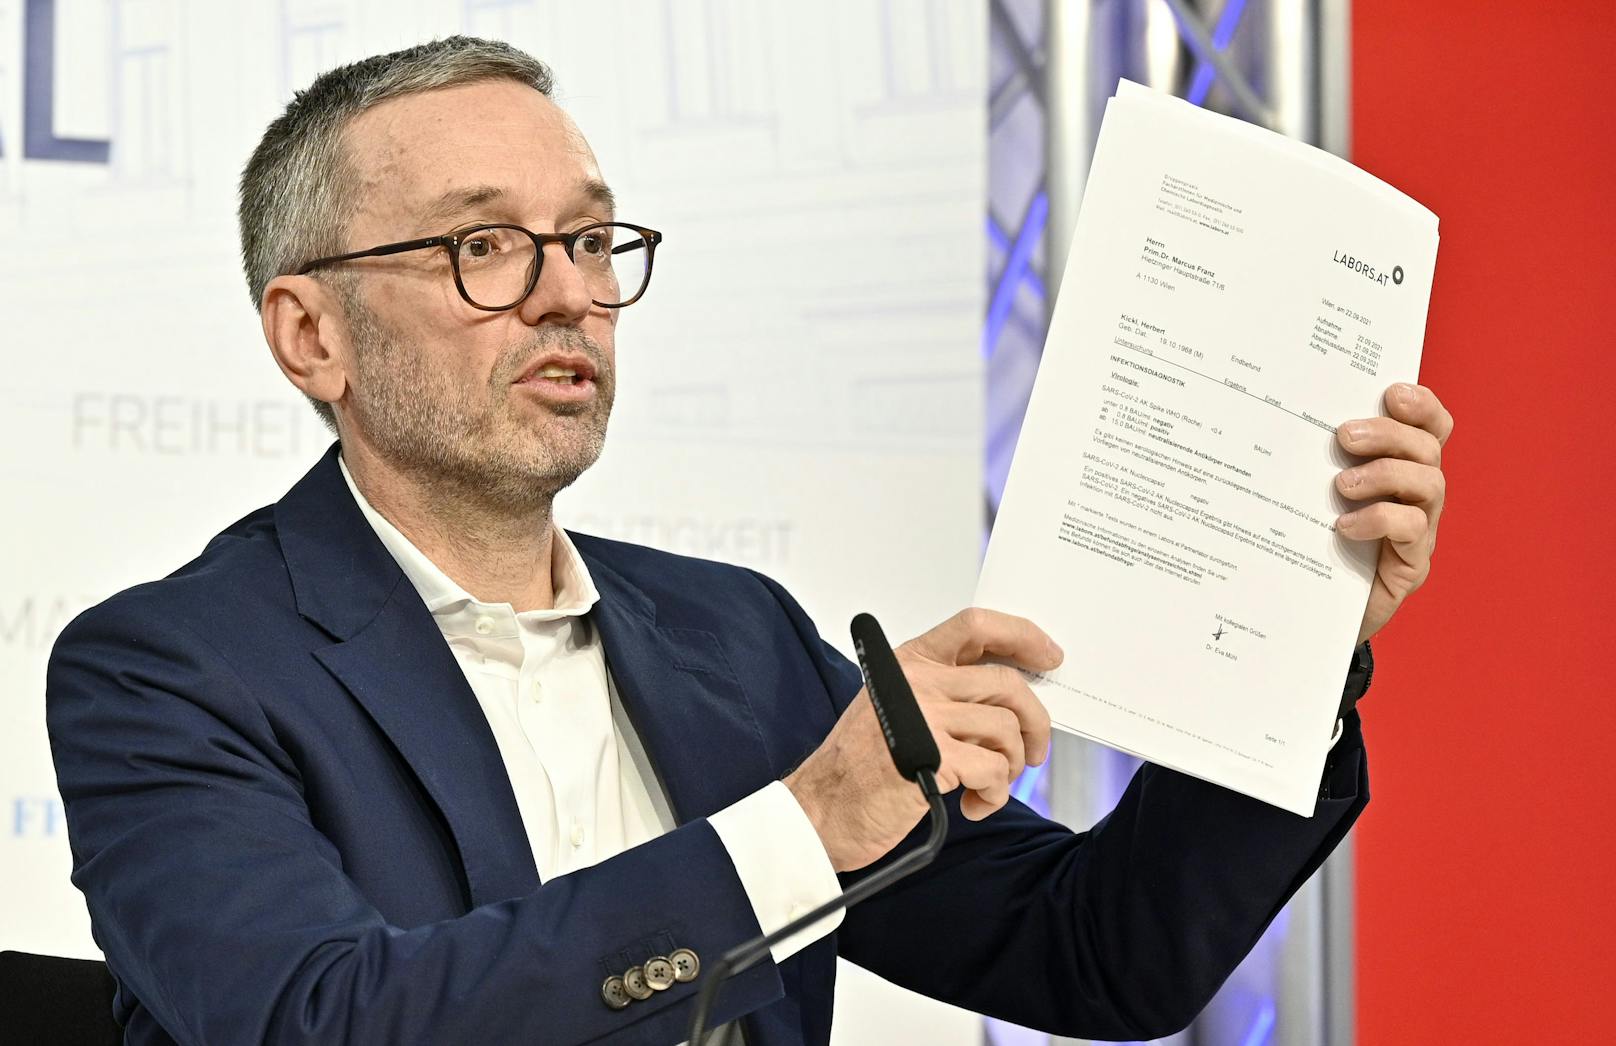 FPÖ-Chef Herbert Kickl trat am Freitag bei seiner "persönlichen Erklärung" den Impfbeweis an.